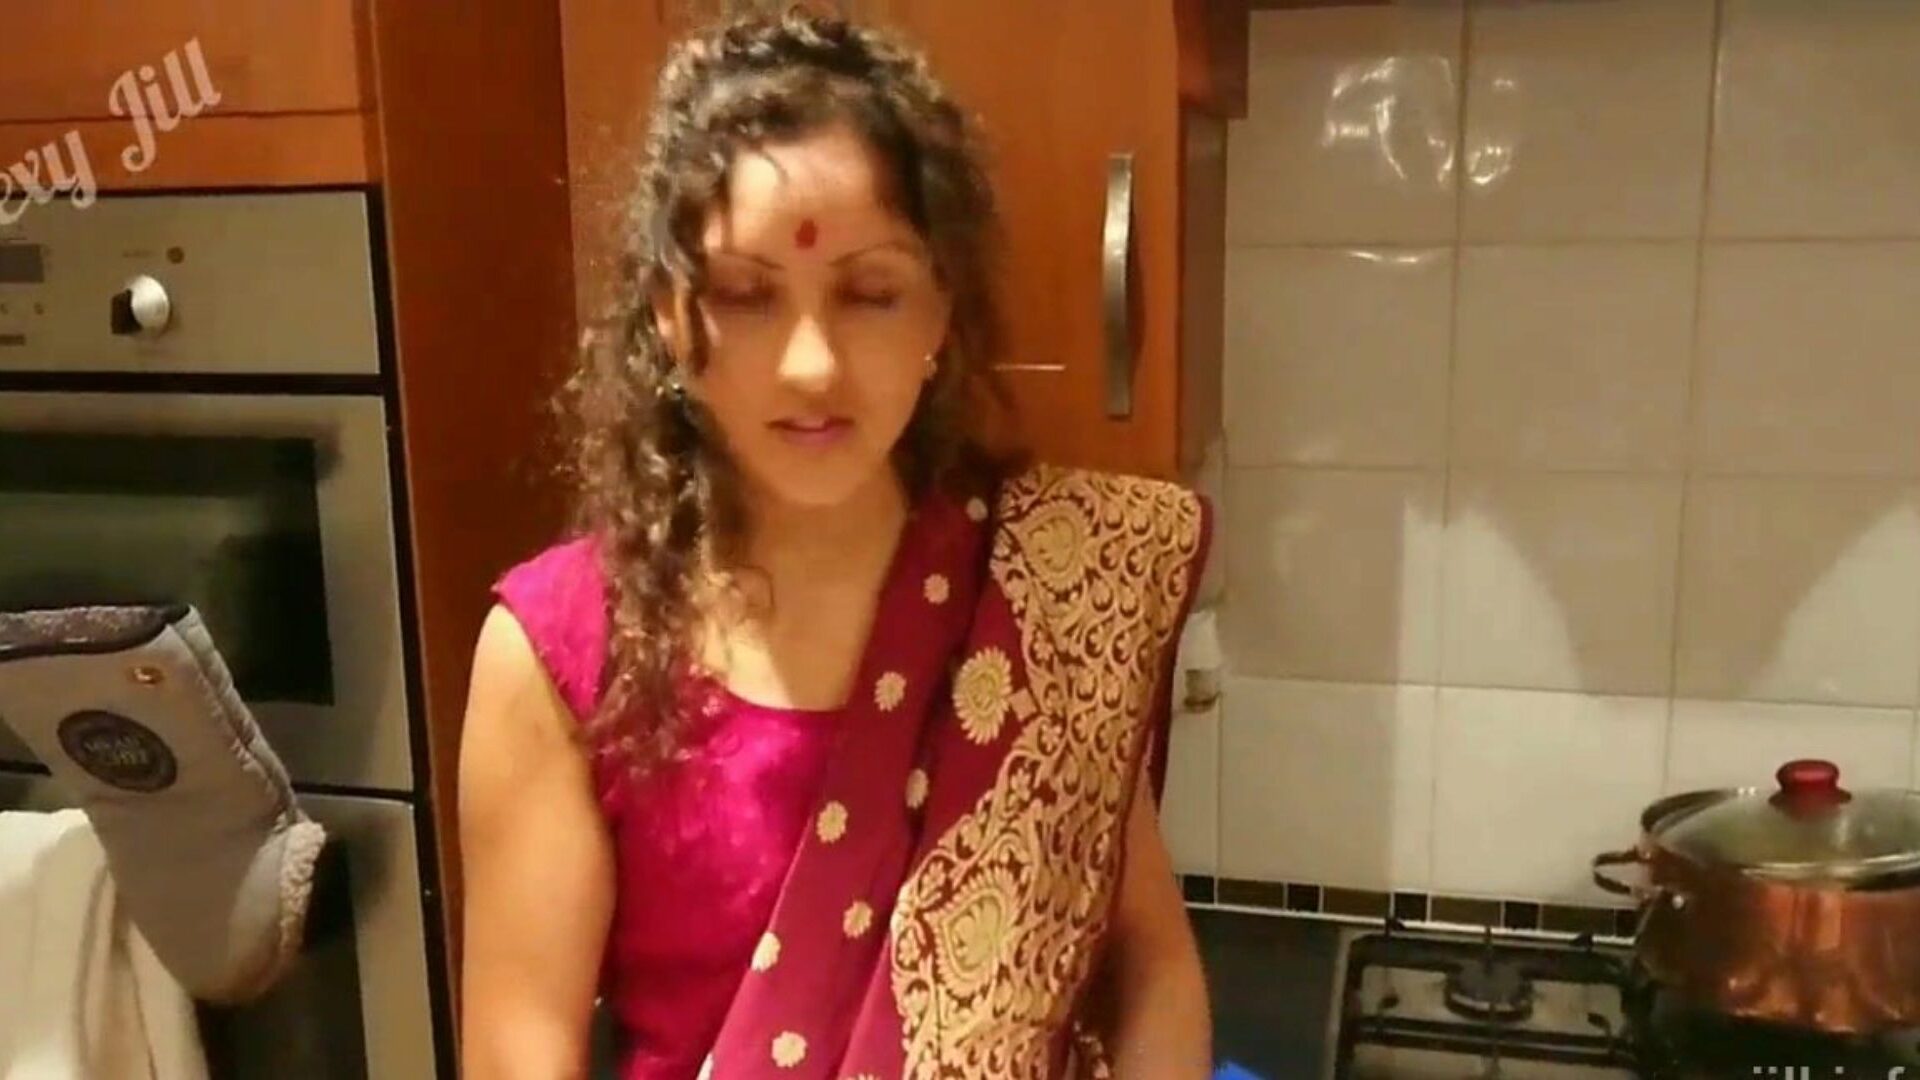 indyjski szwagierka zdradza męża z bratem rodzinna orgia sandał kamasutra desi chudai pow indyjski